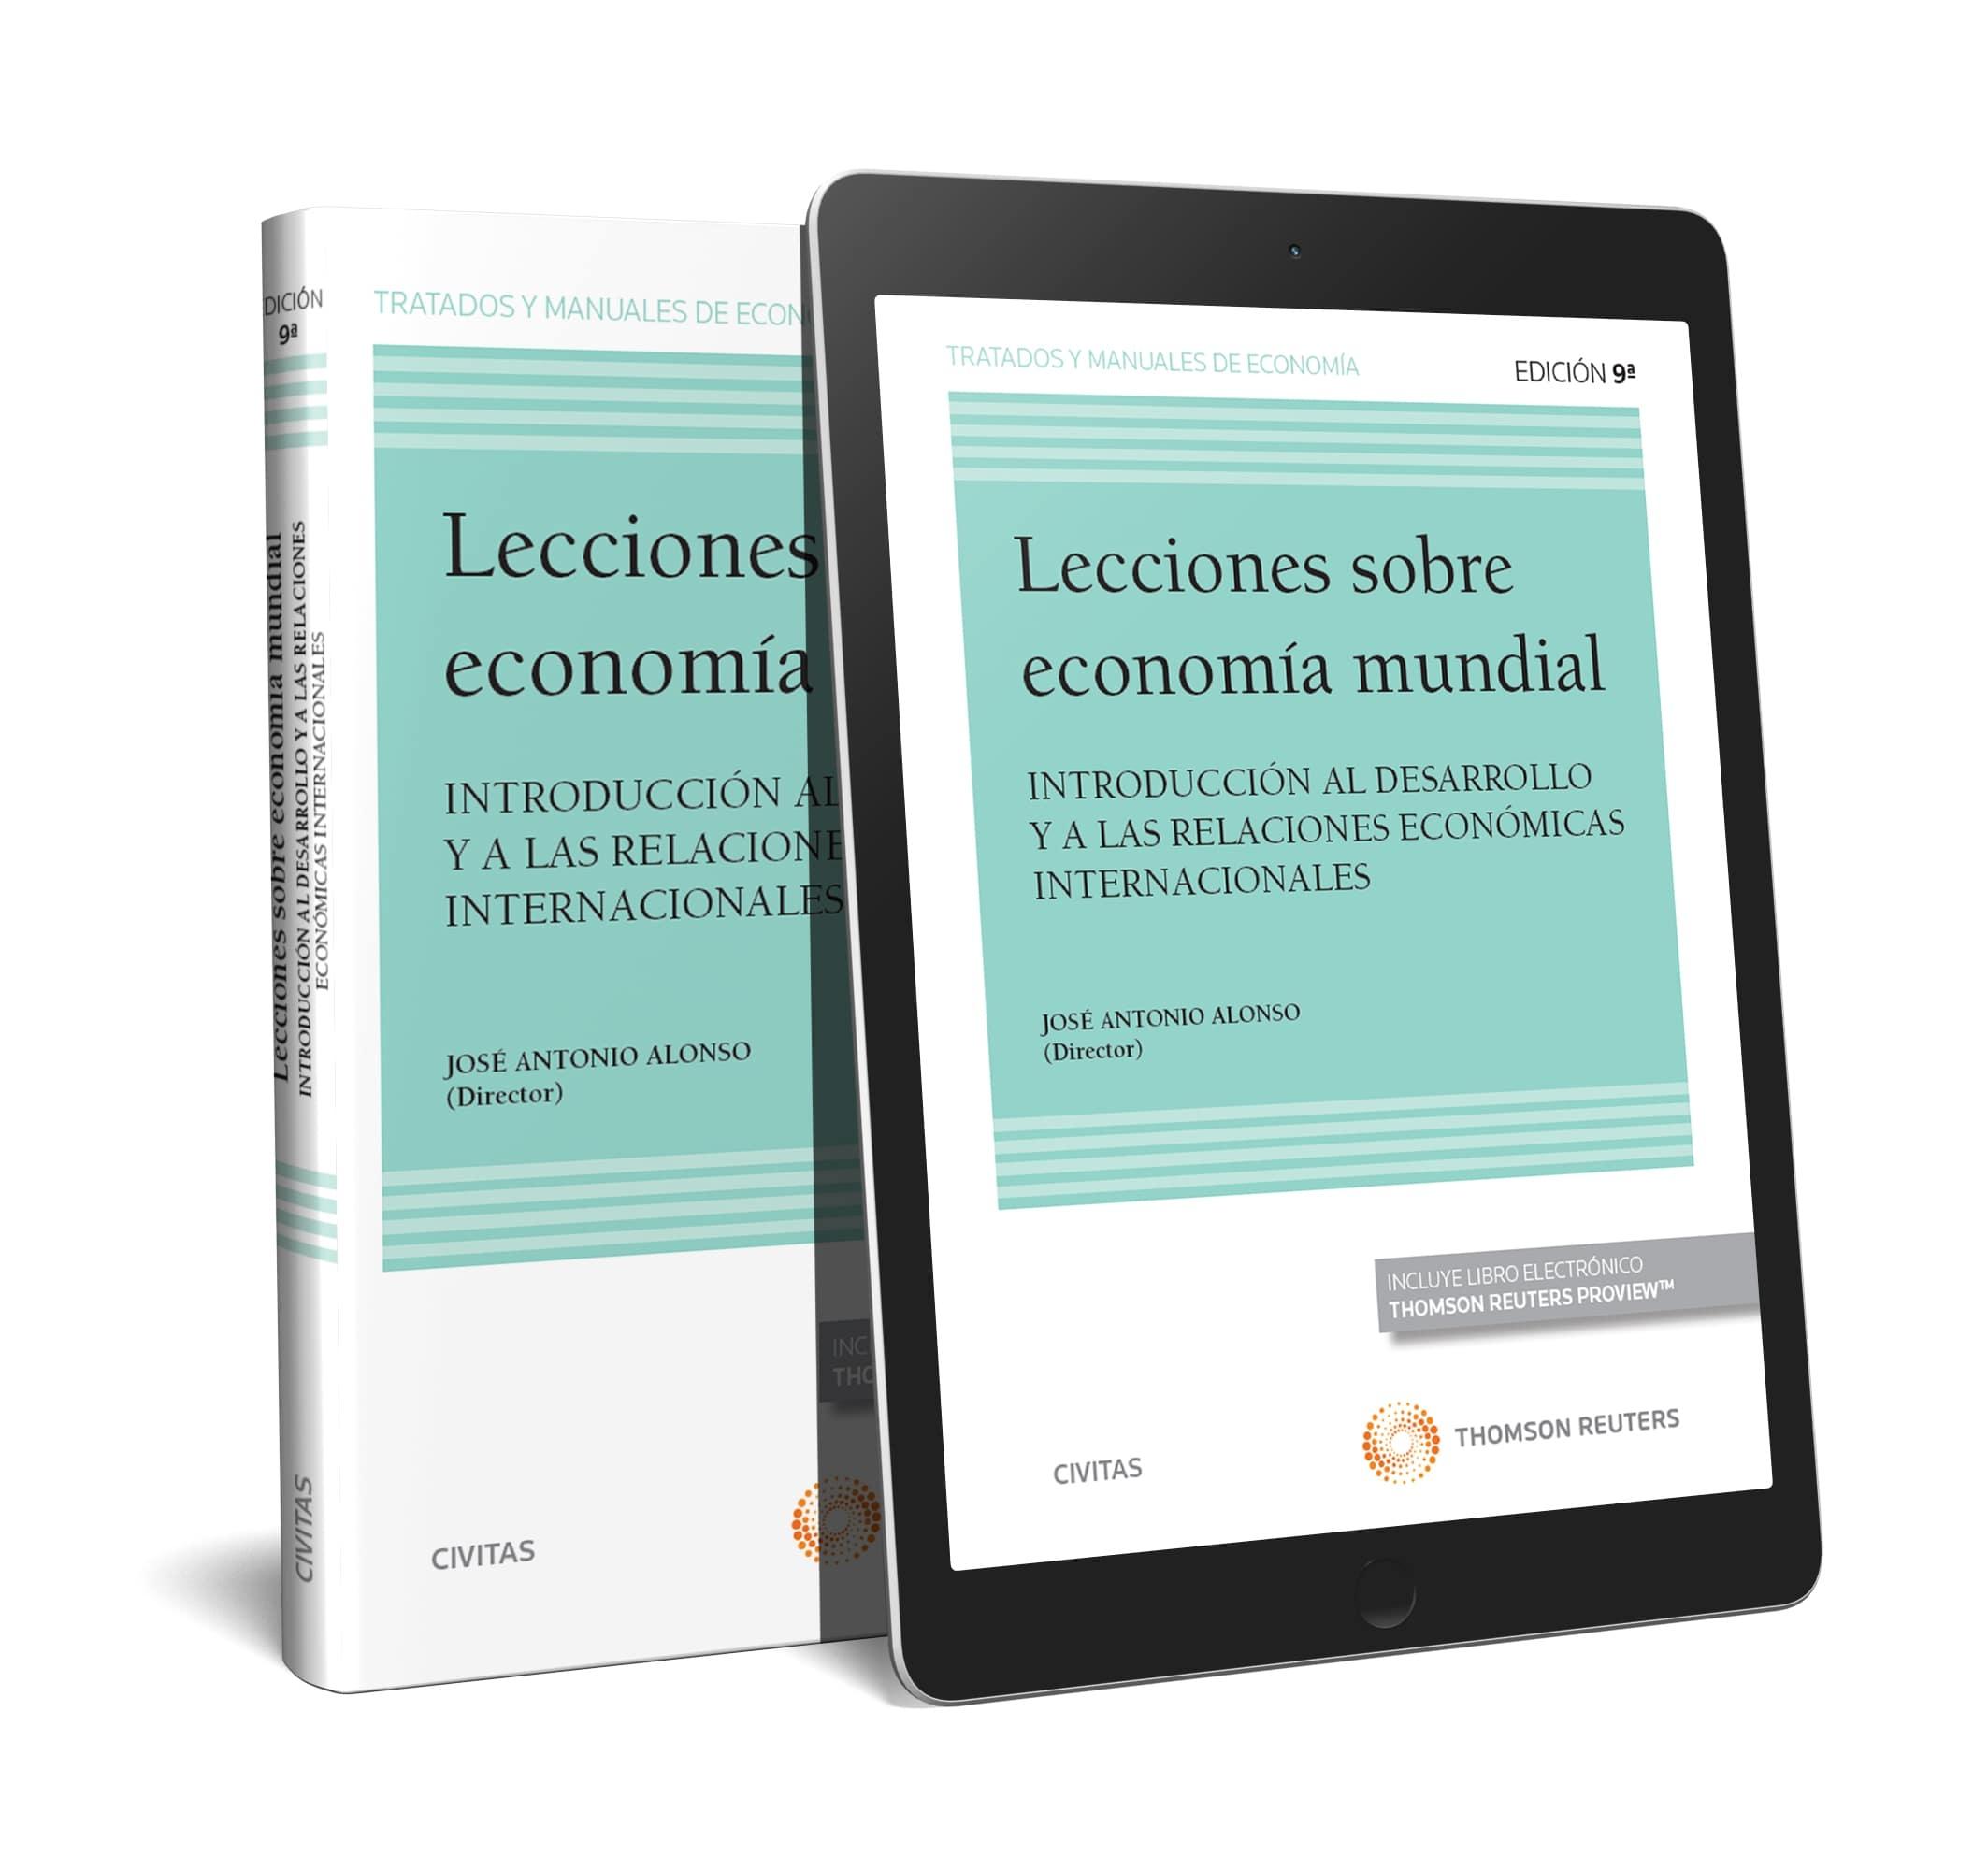 LECCIONES SOBRE ECONOMÍA MUNDIAL (PAPEL + E-BOOK) "Introducción al desarrollo y a las relaciones económicas internacionales"